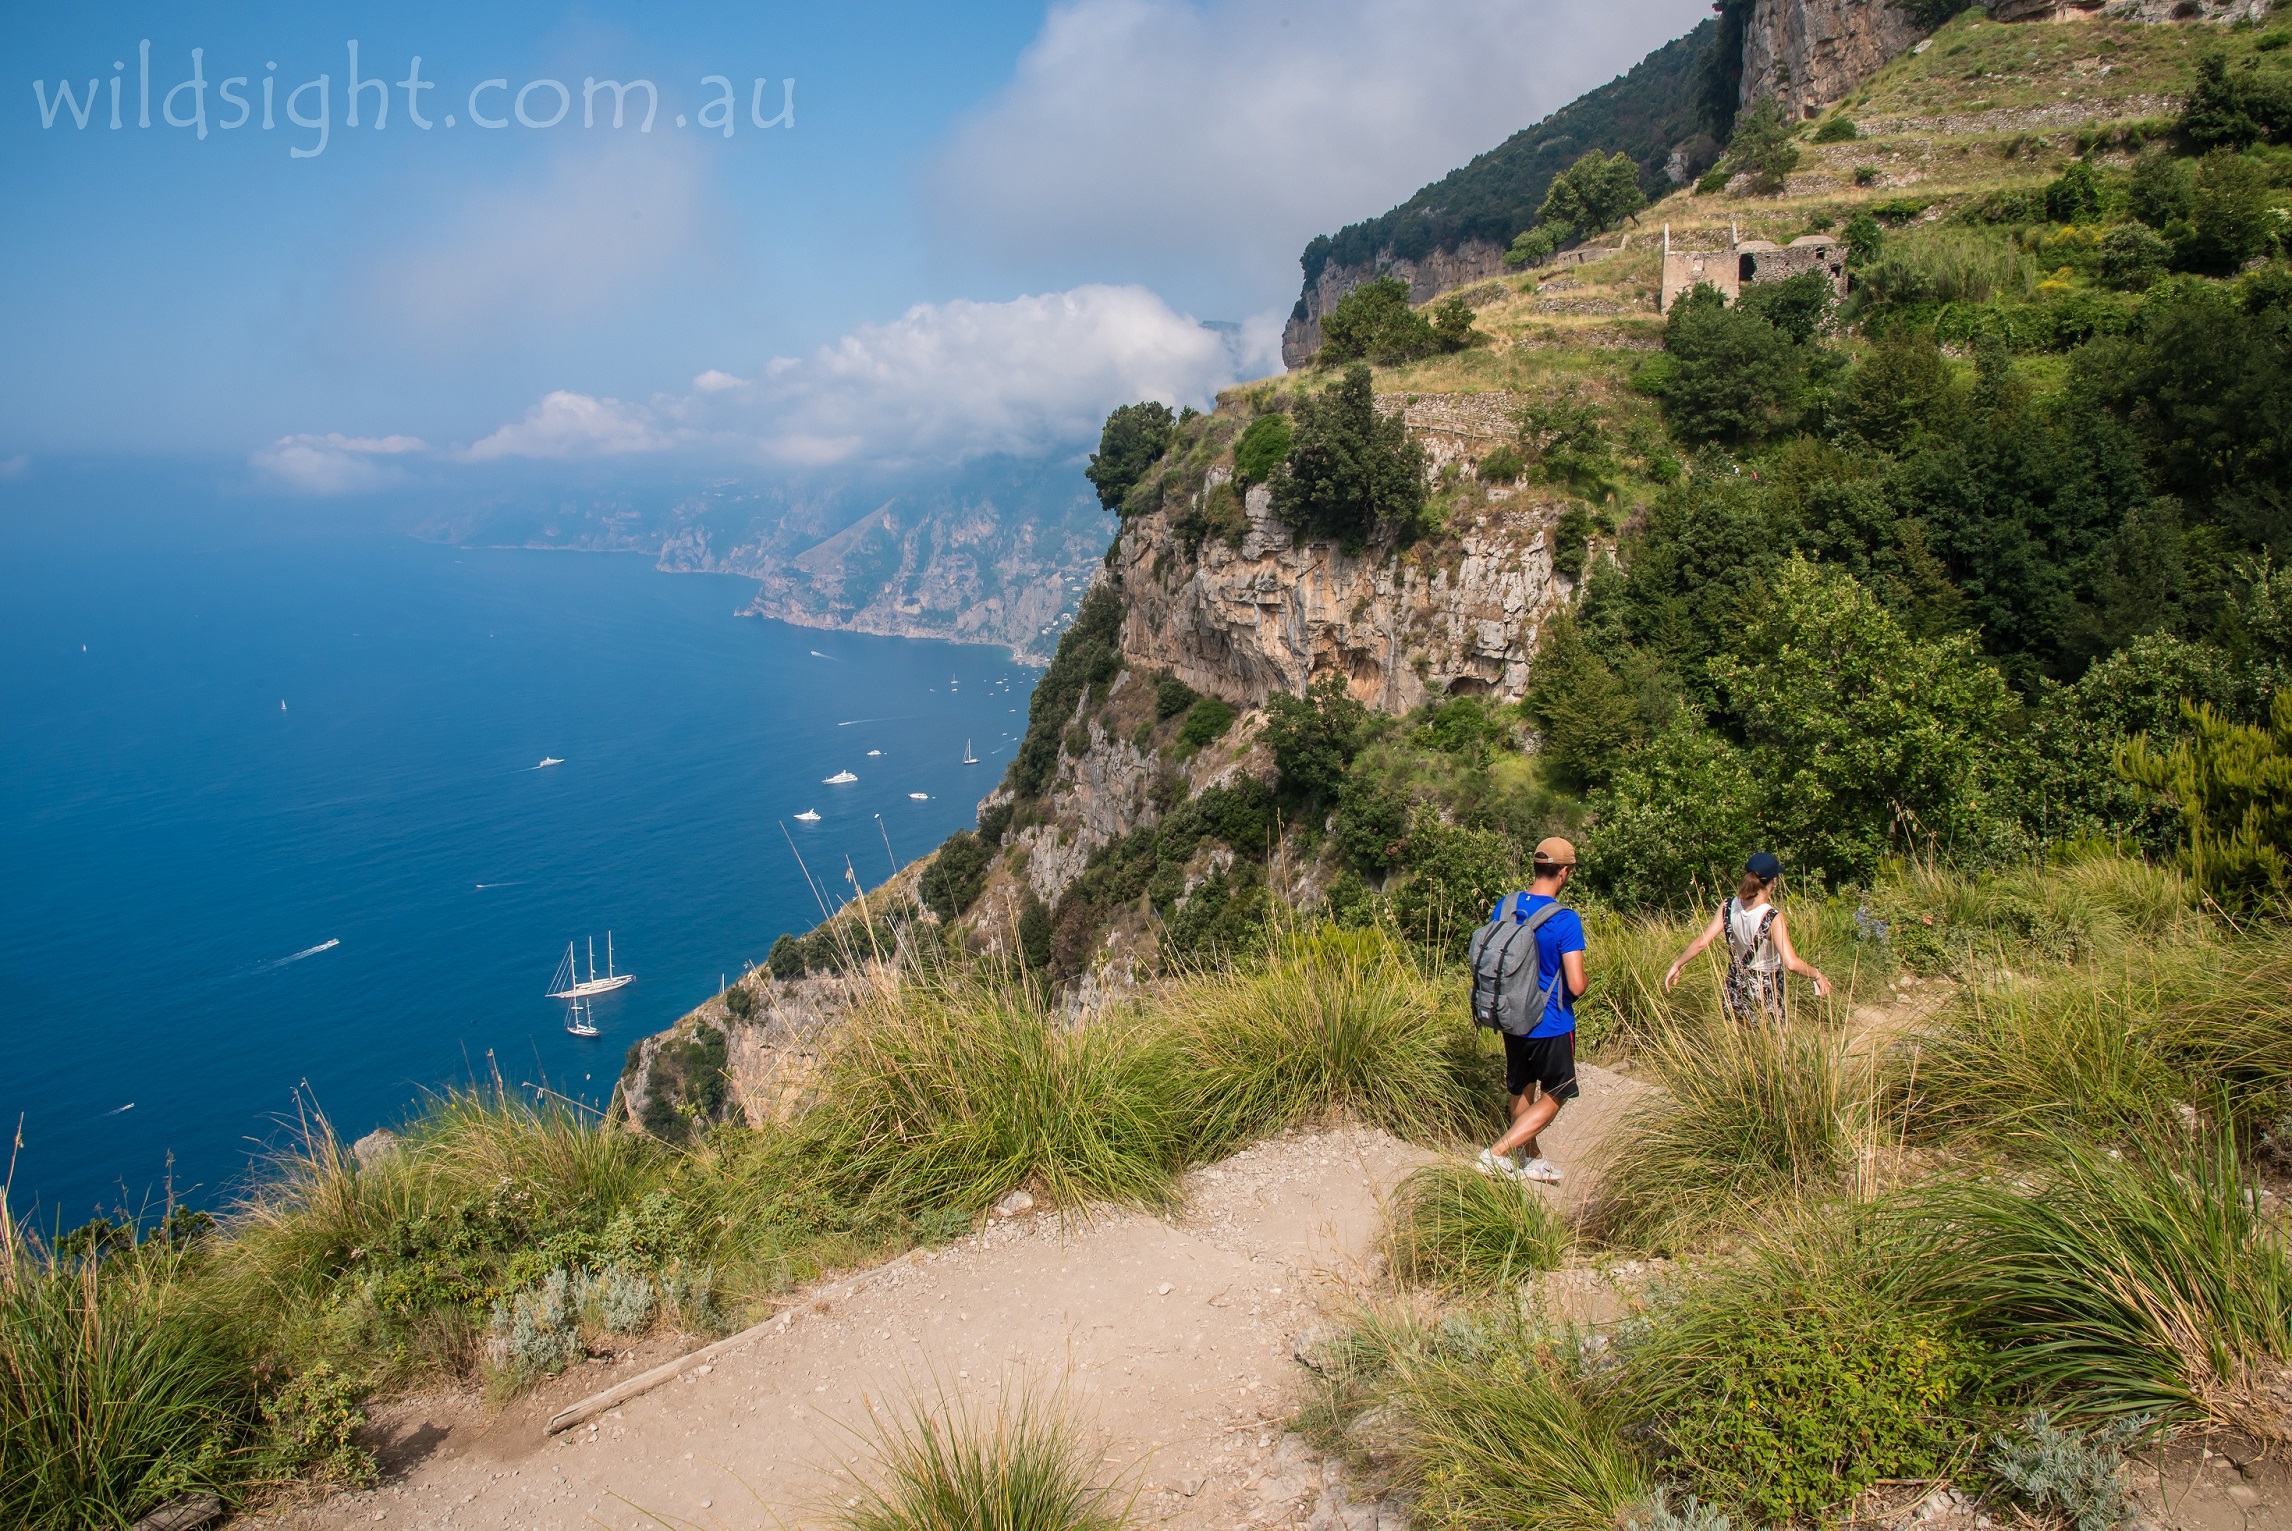 færge væsentligt Mellem Amalfi Coast walking track notes - Wild Sight